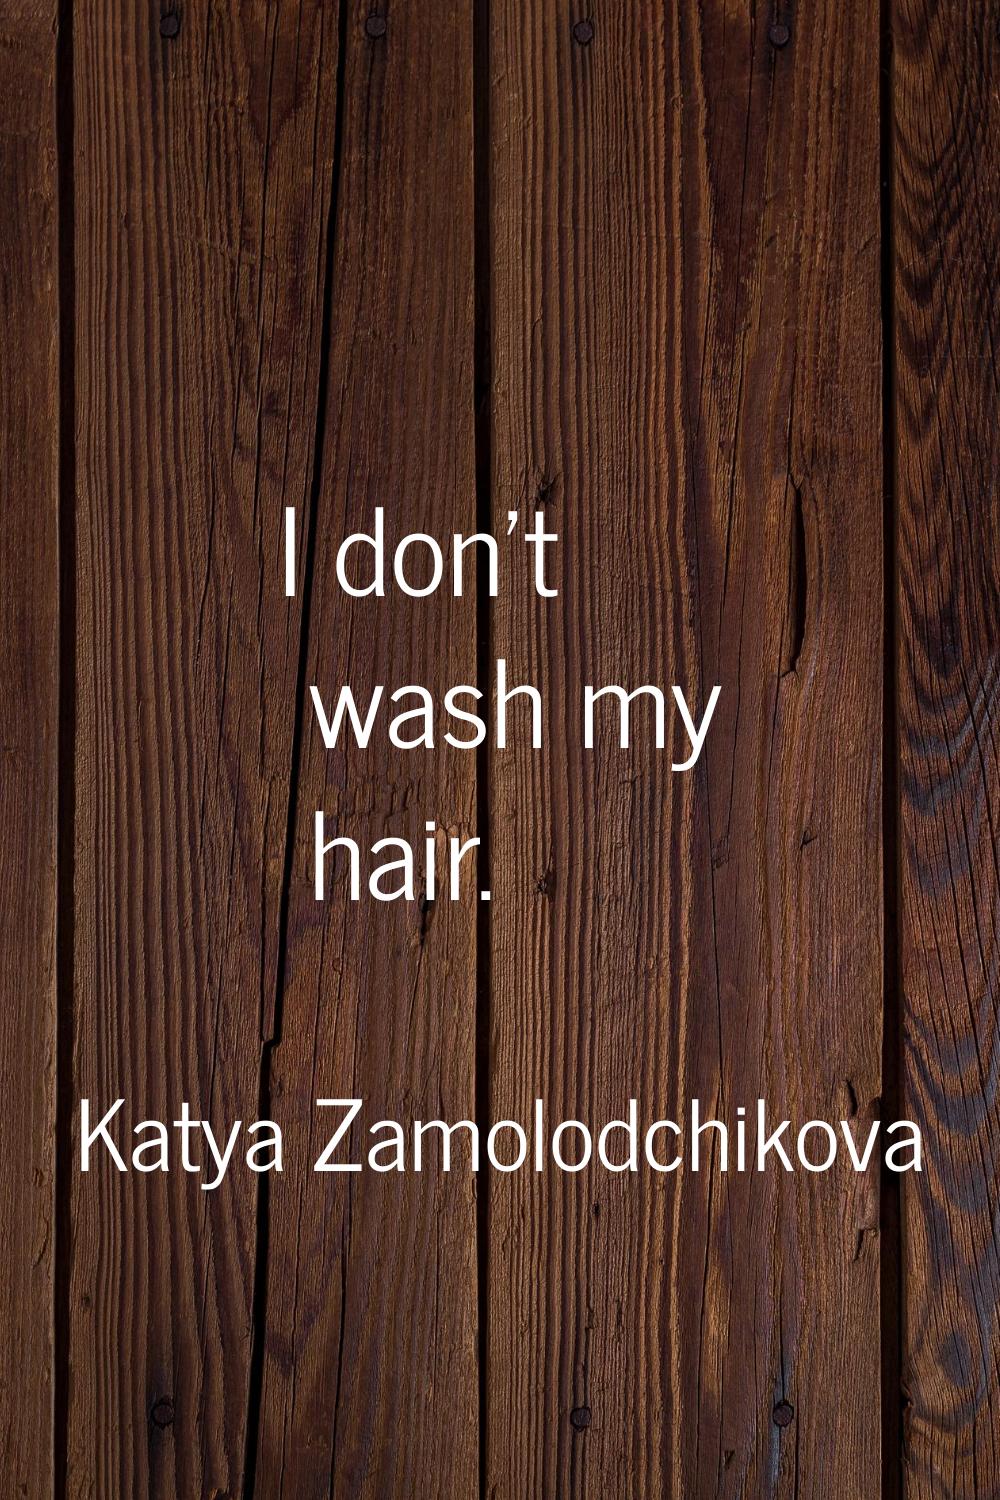 I don't wash my hair.